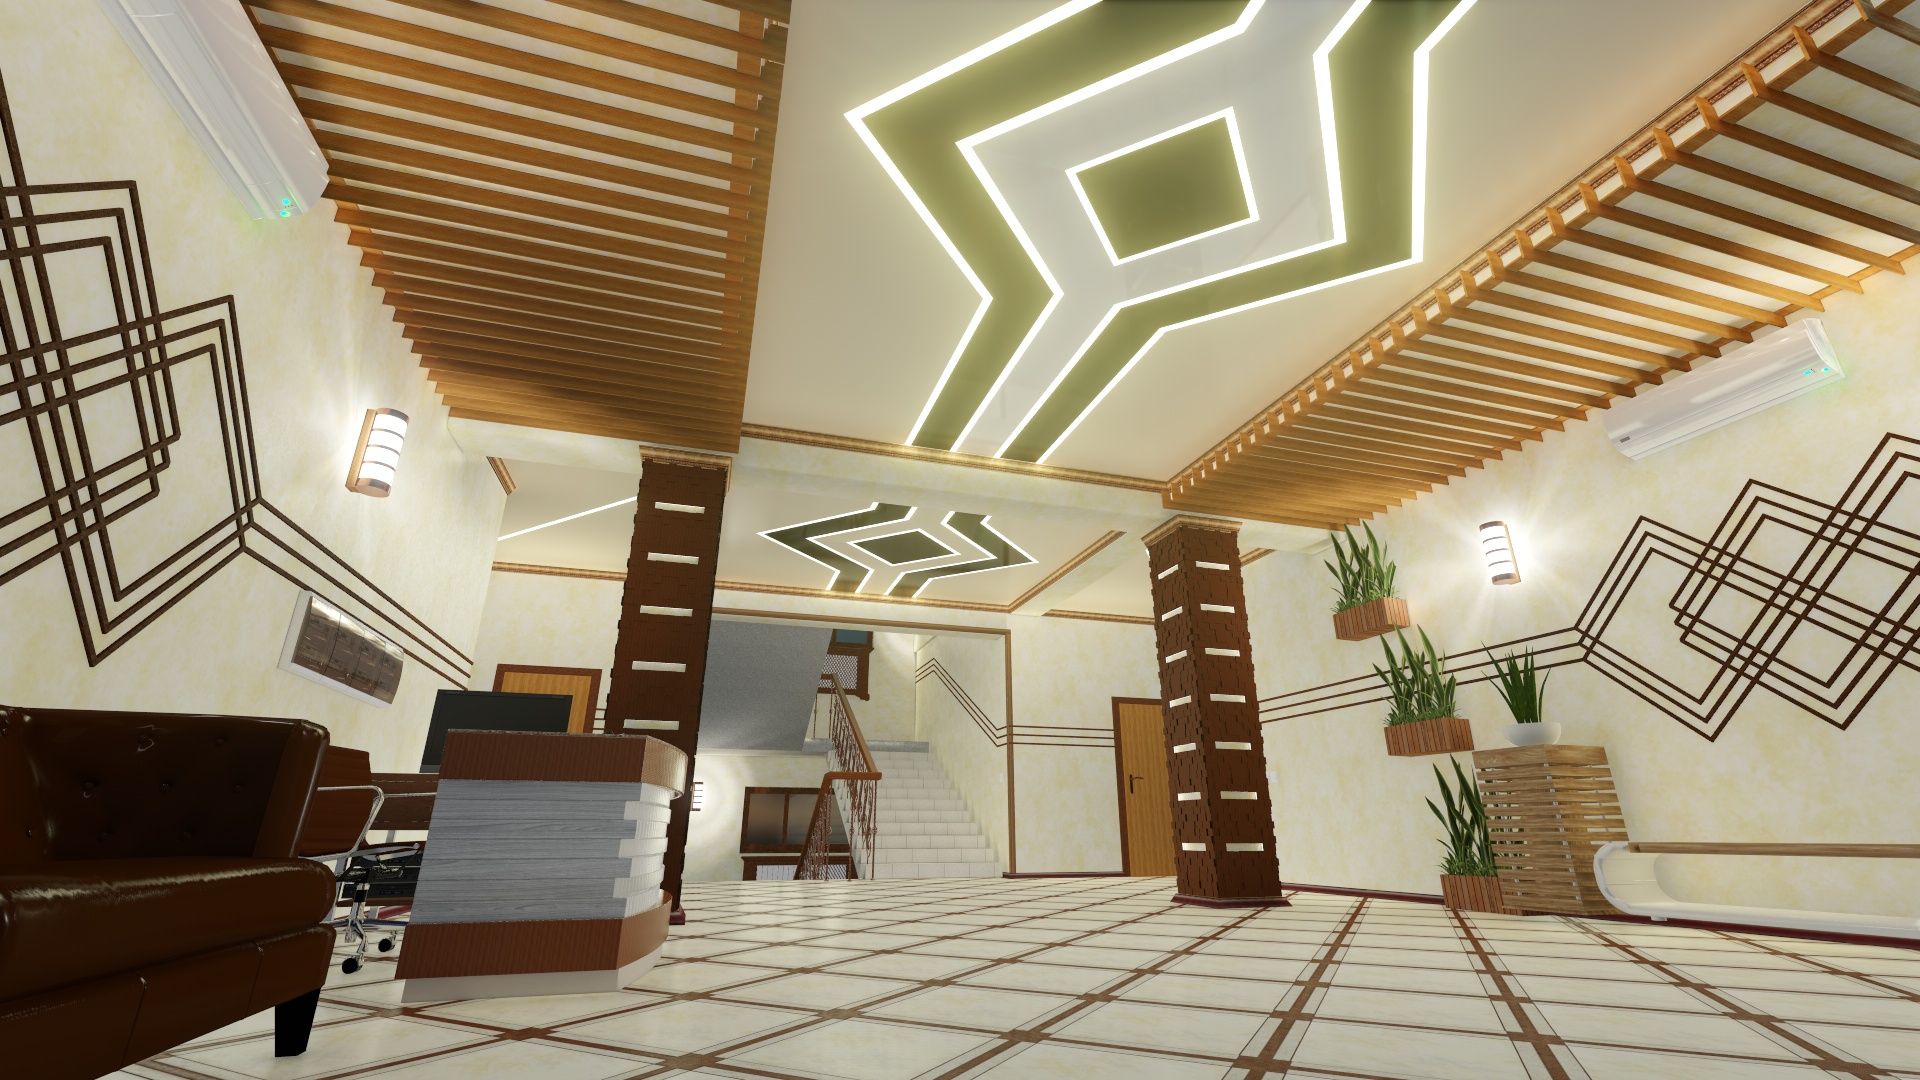 Concept 3D du hall d'entrée et des couloirs d'un immeuble de bureaux. (Vidéo ci-jointe) dans Cinema 4d Other image